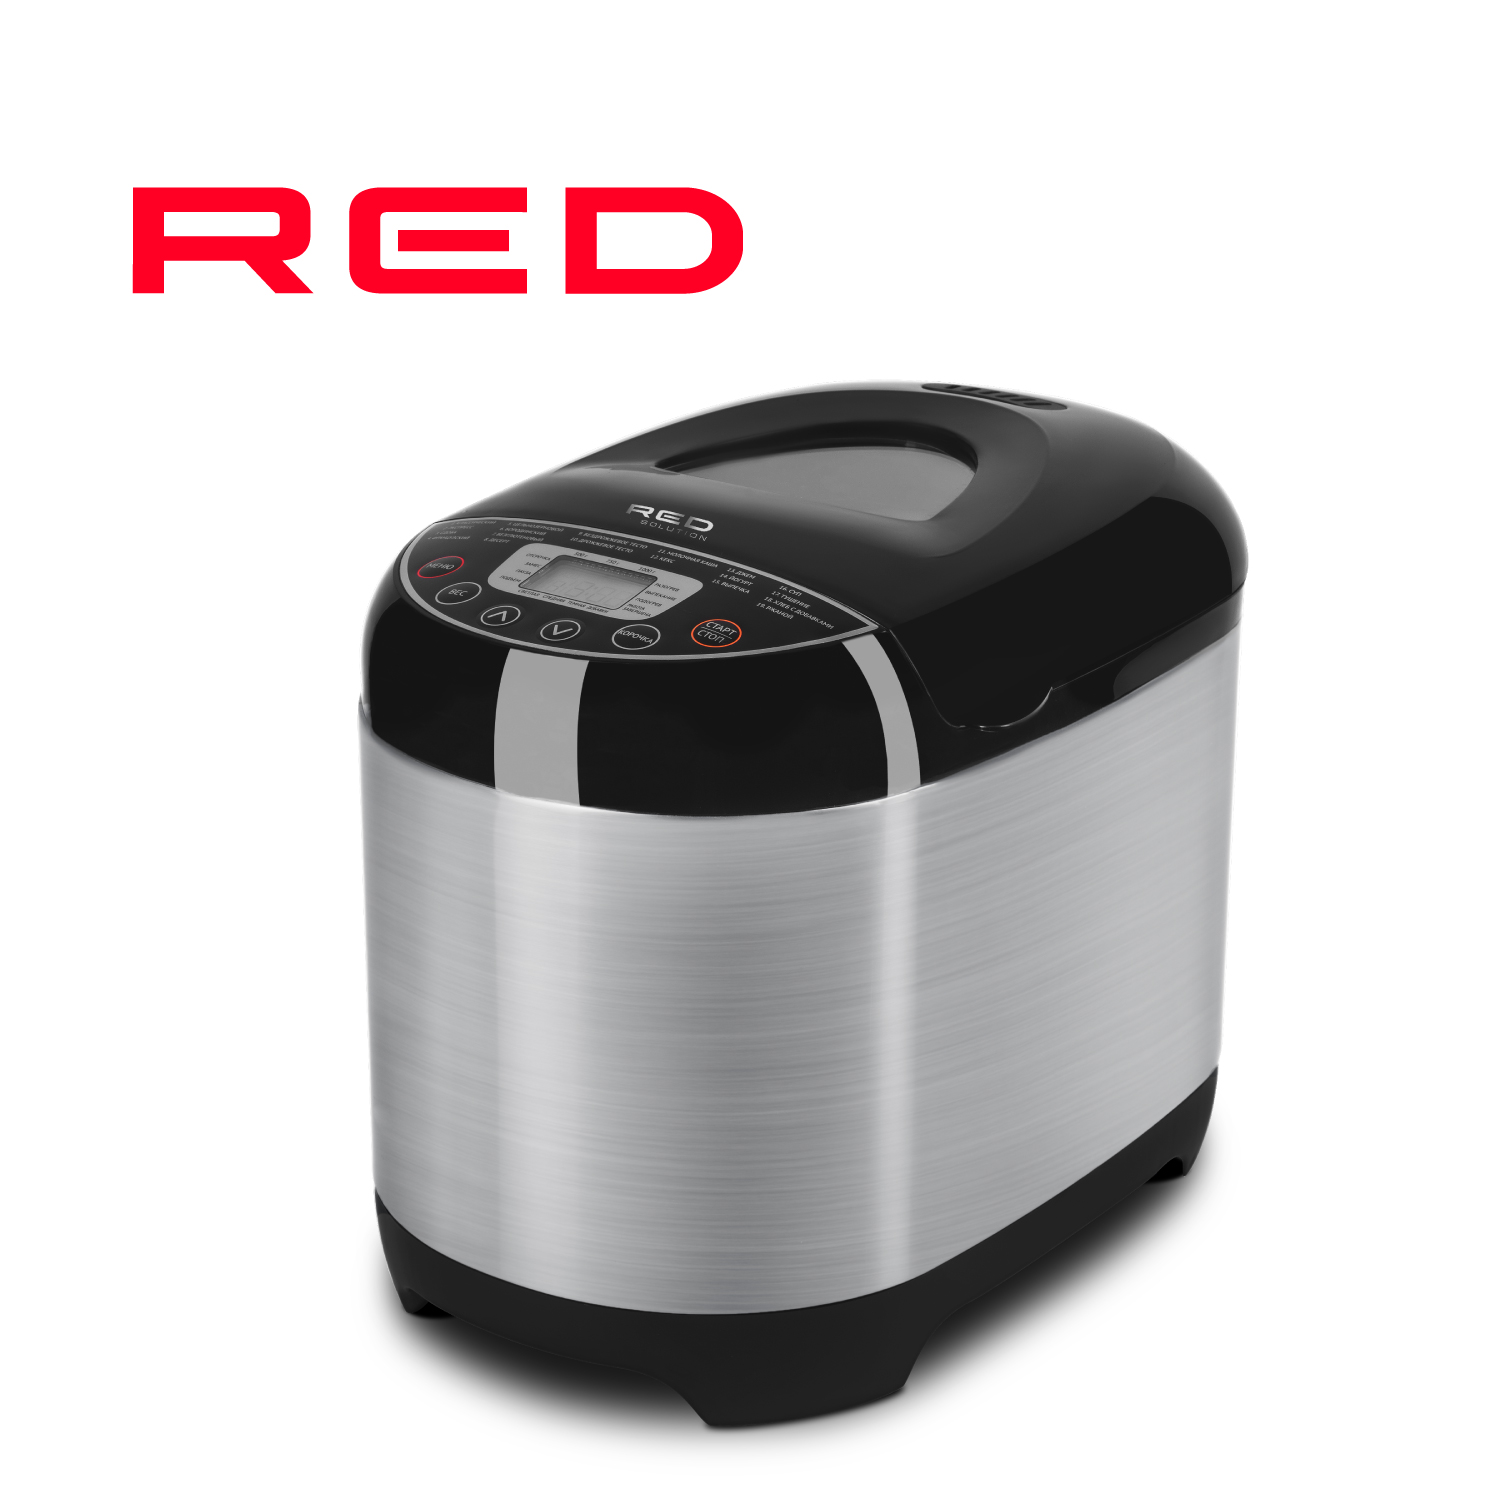 Хлебопечка RED SOLUTION RBM-M1911 серебристый, серый, черный хлебопечка gfgril gfb 5000 серебристый